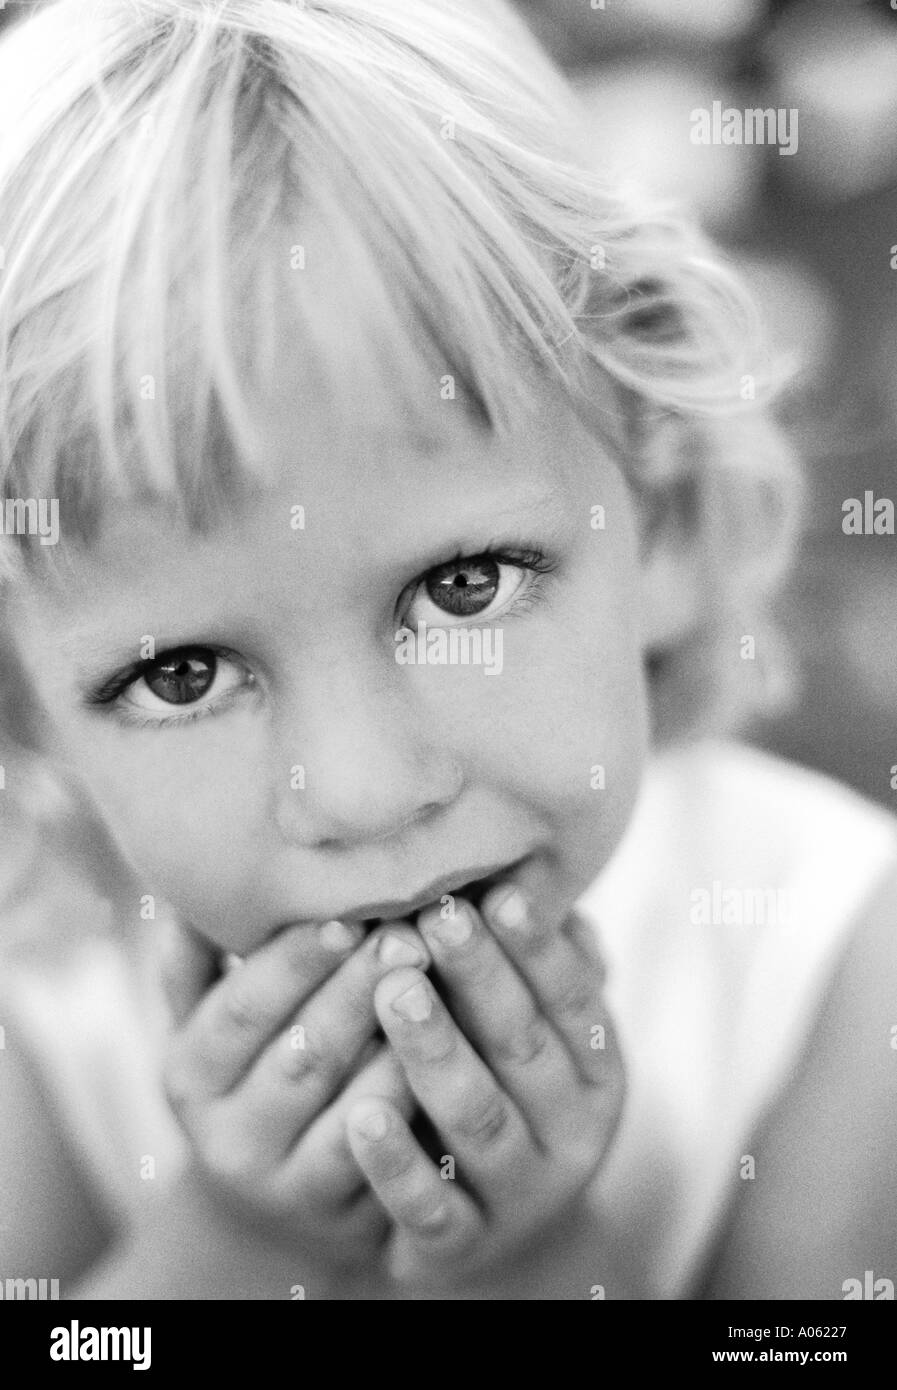 Glücklich Traurige Emotionen Gefühle Schwarzweiß Stockfotos Und Bilder Alamy 